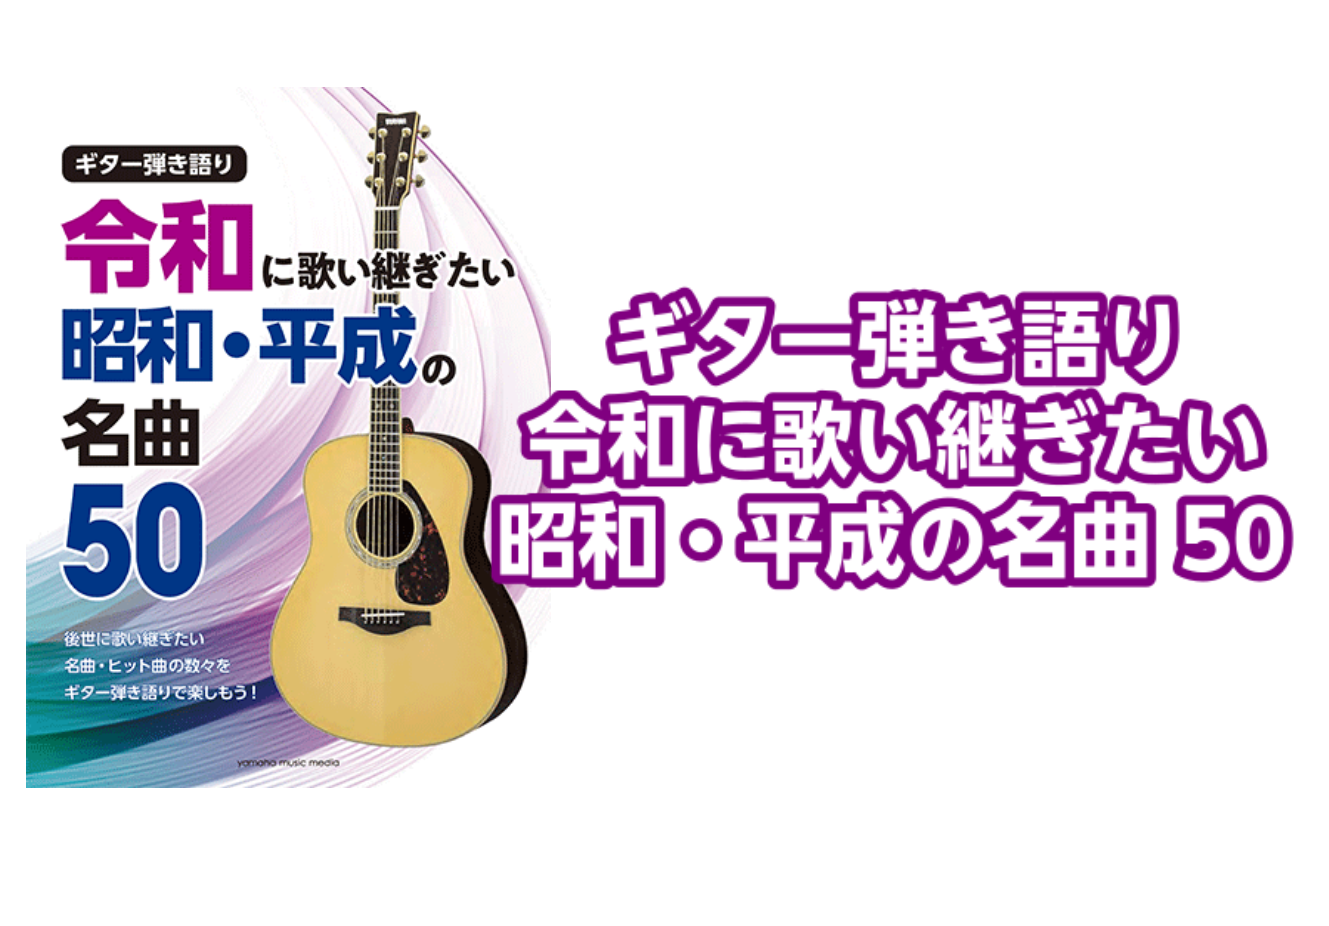 【楽譜】ギター弾き語り 令和に歌い継ぎたい 昭和・平成の名曲 50入荷のご案内